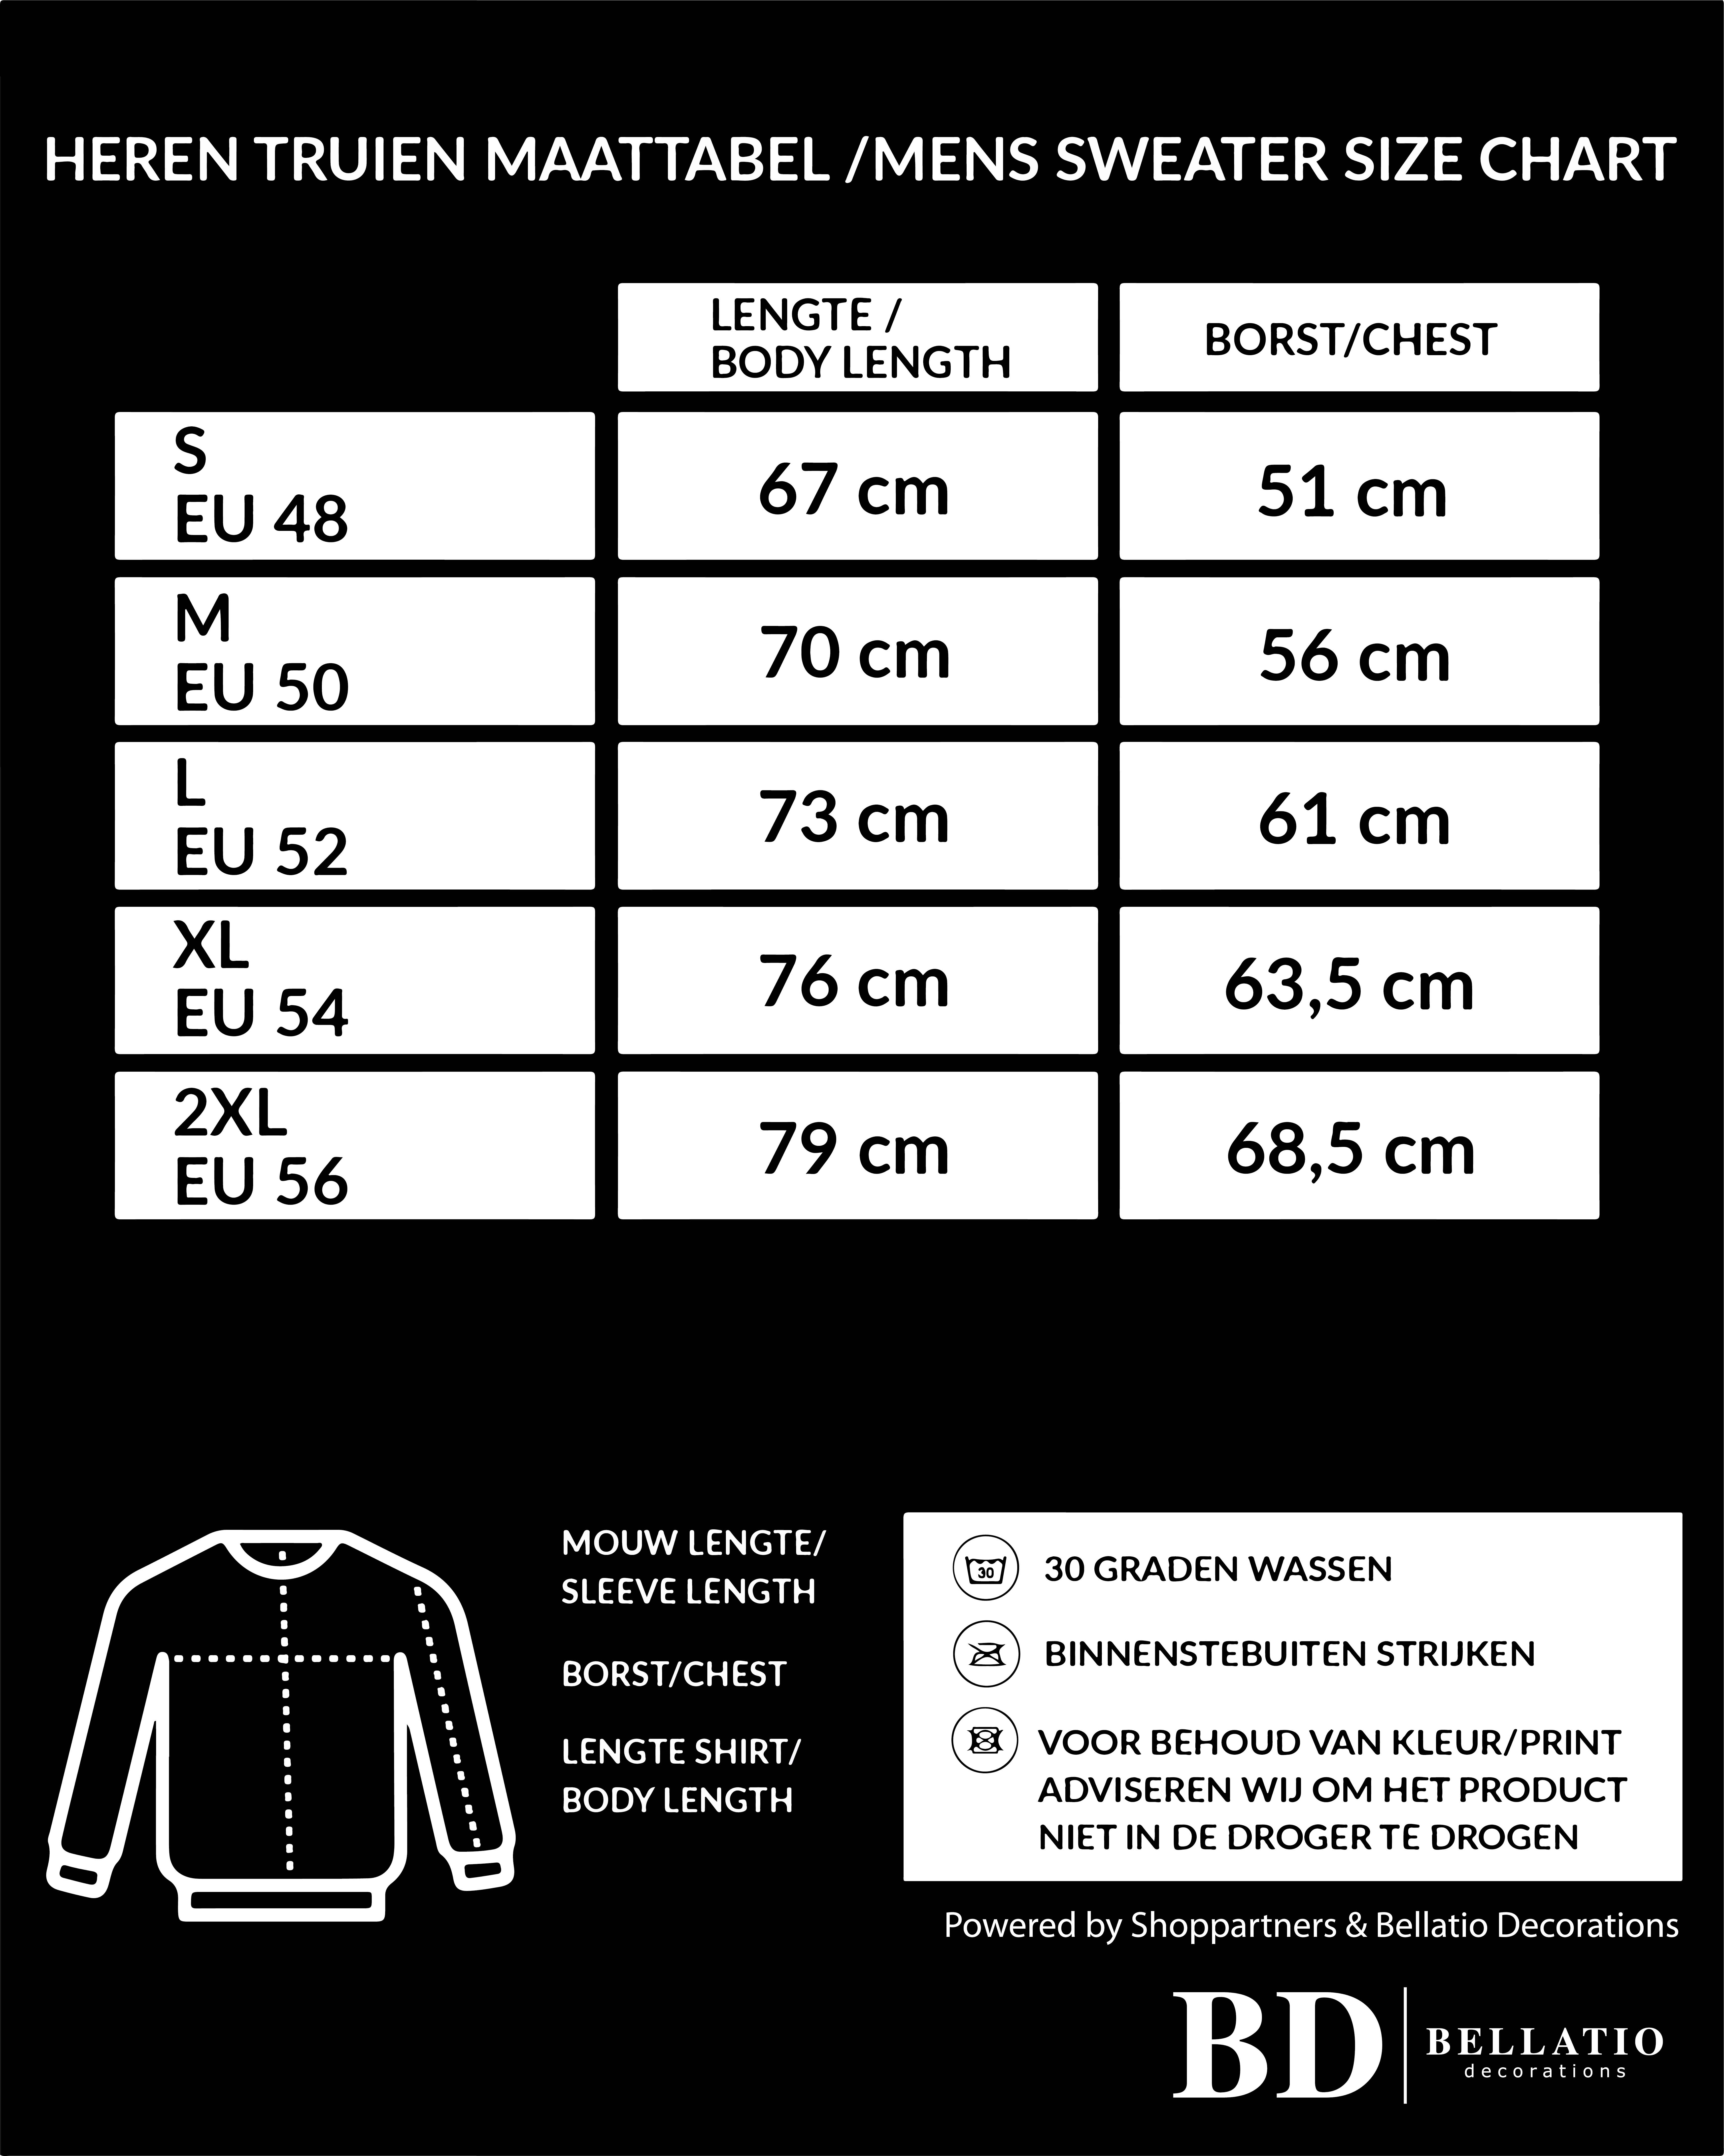 Sweater / sweatshirt trui zwart met ronde hals en raglan mouwen voor mannen